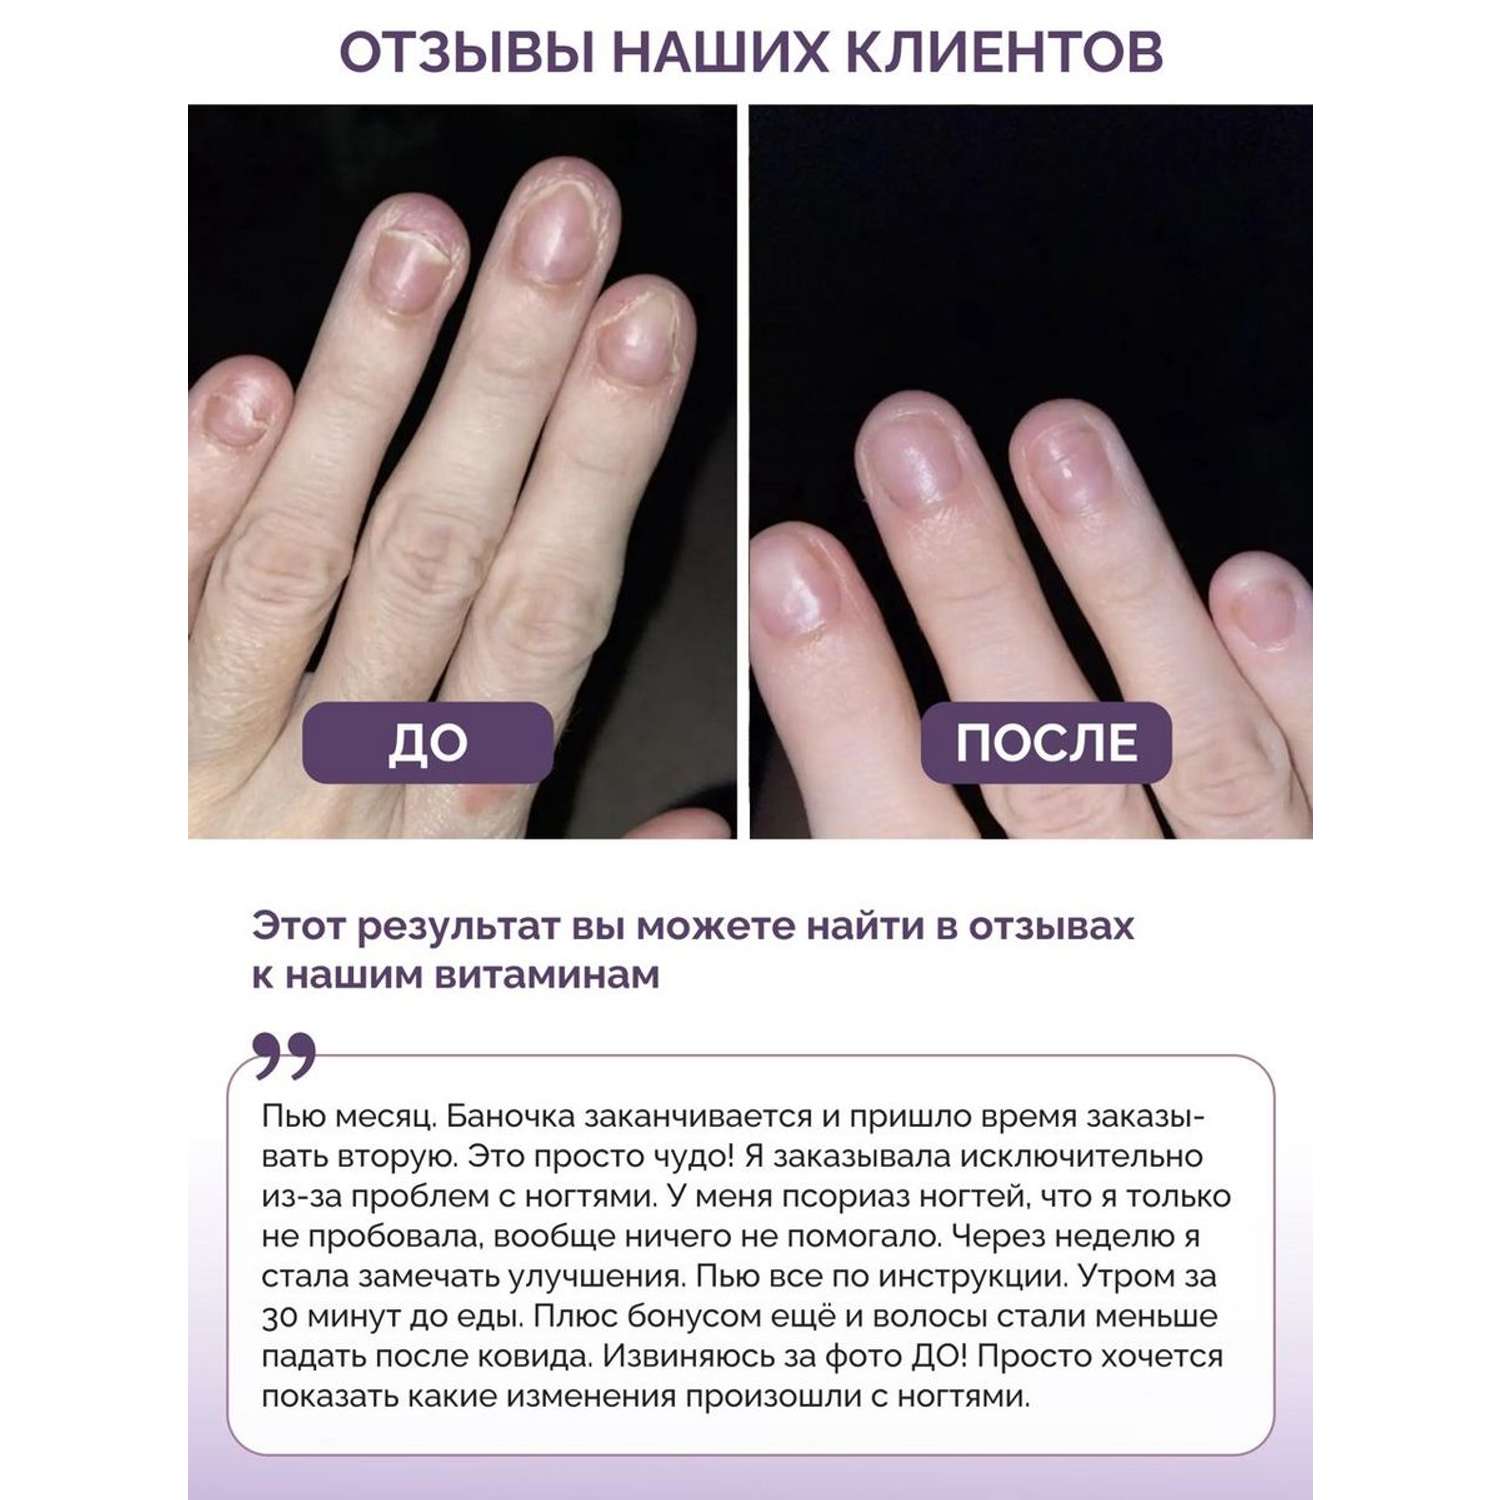 Витамины для волос кожи ногтей BIOTTE hair nails skin витаминно-минеральный комплекс БАД 60 капсул - фото 4